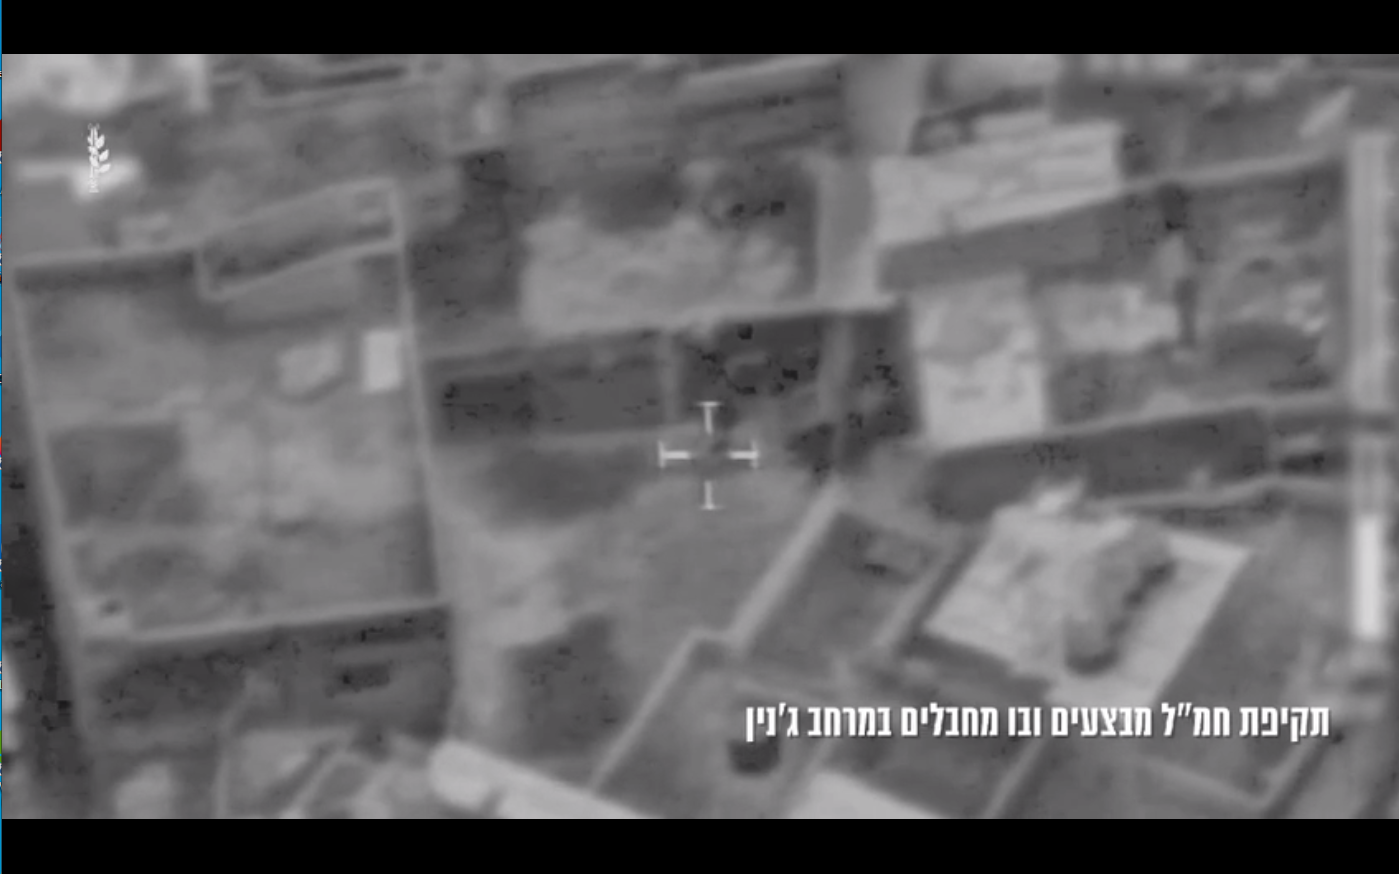 القوات الإسرائيلية تشن حملة اقتحامات واعتقالات واسعة في الضفة الغربية (فيديو+صورة)